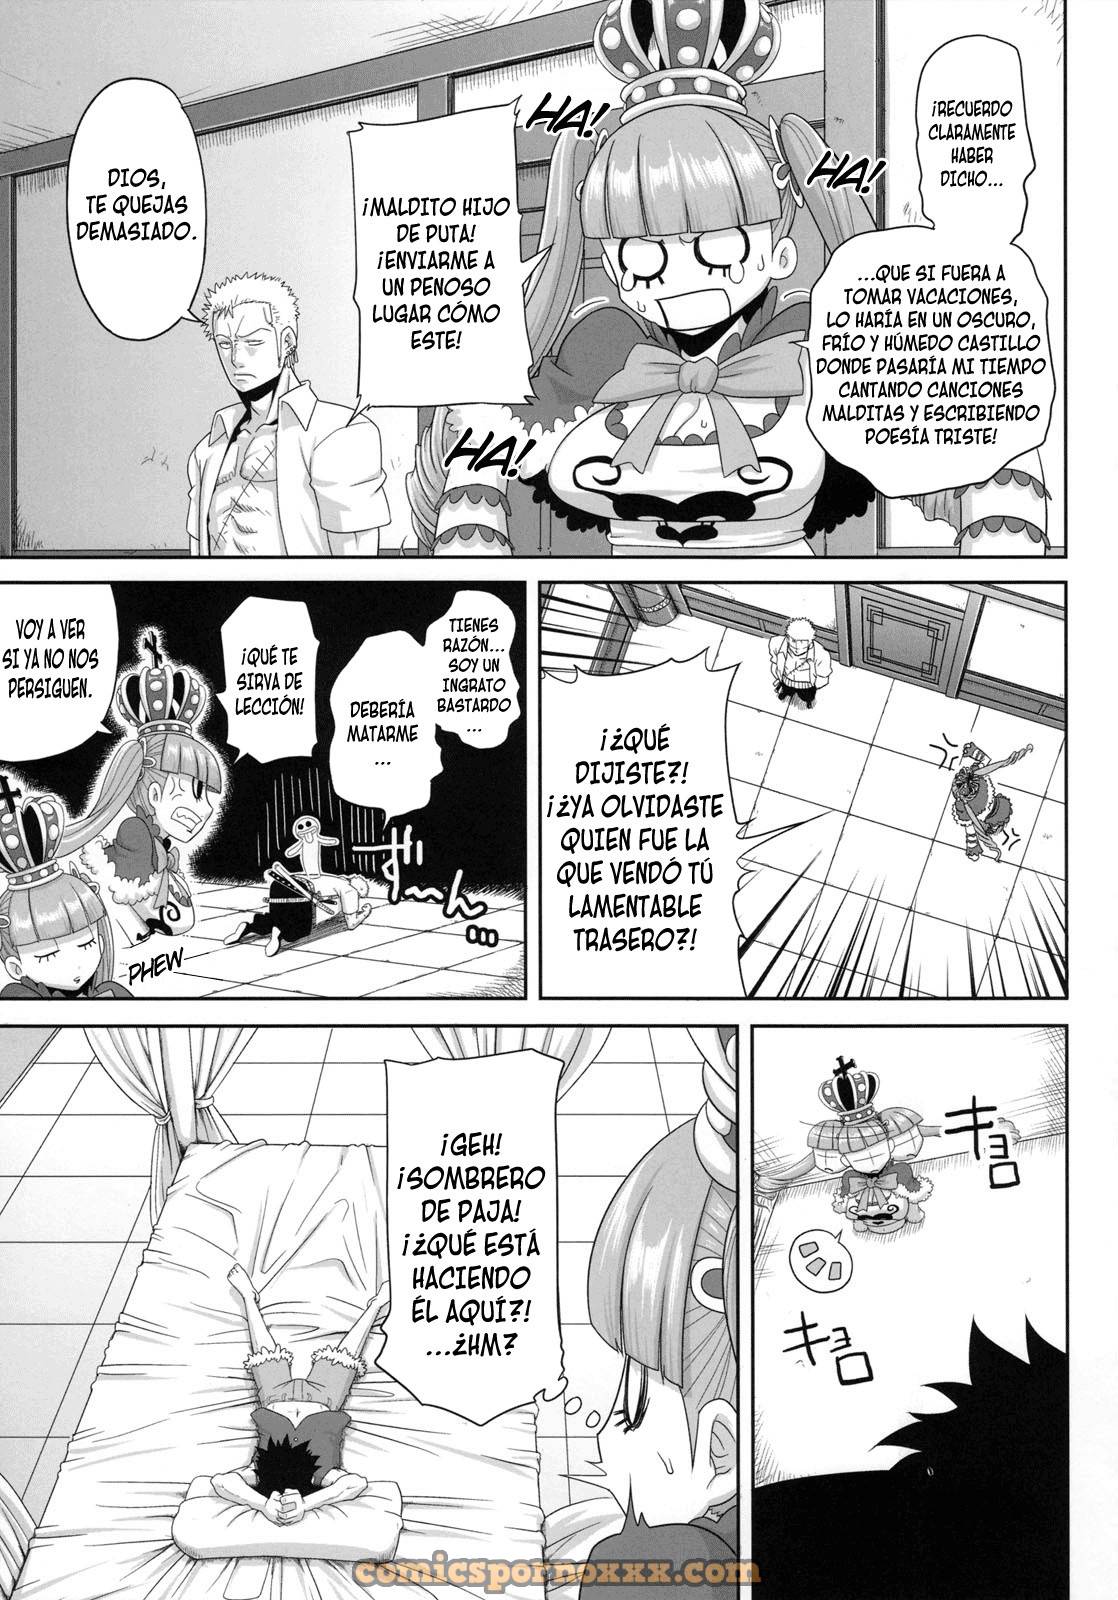 Through The Wall (One Piece en el Reino de Amazon Lily) - 3 - Comics Porno - Hentai Manga - Cartoon XXX